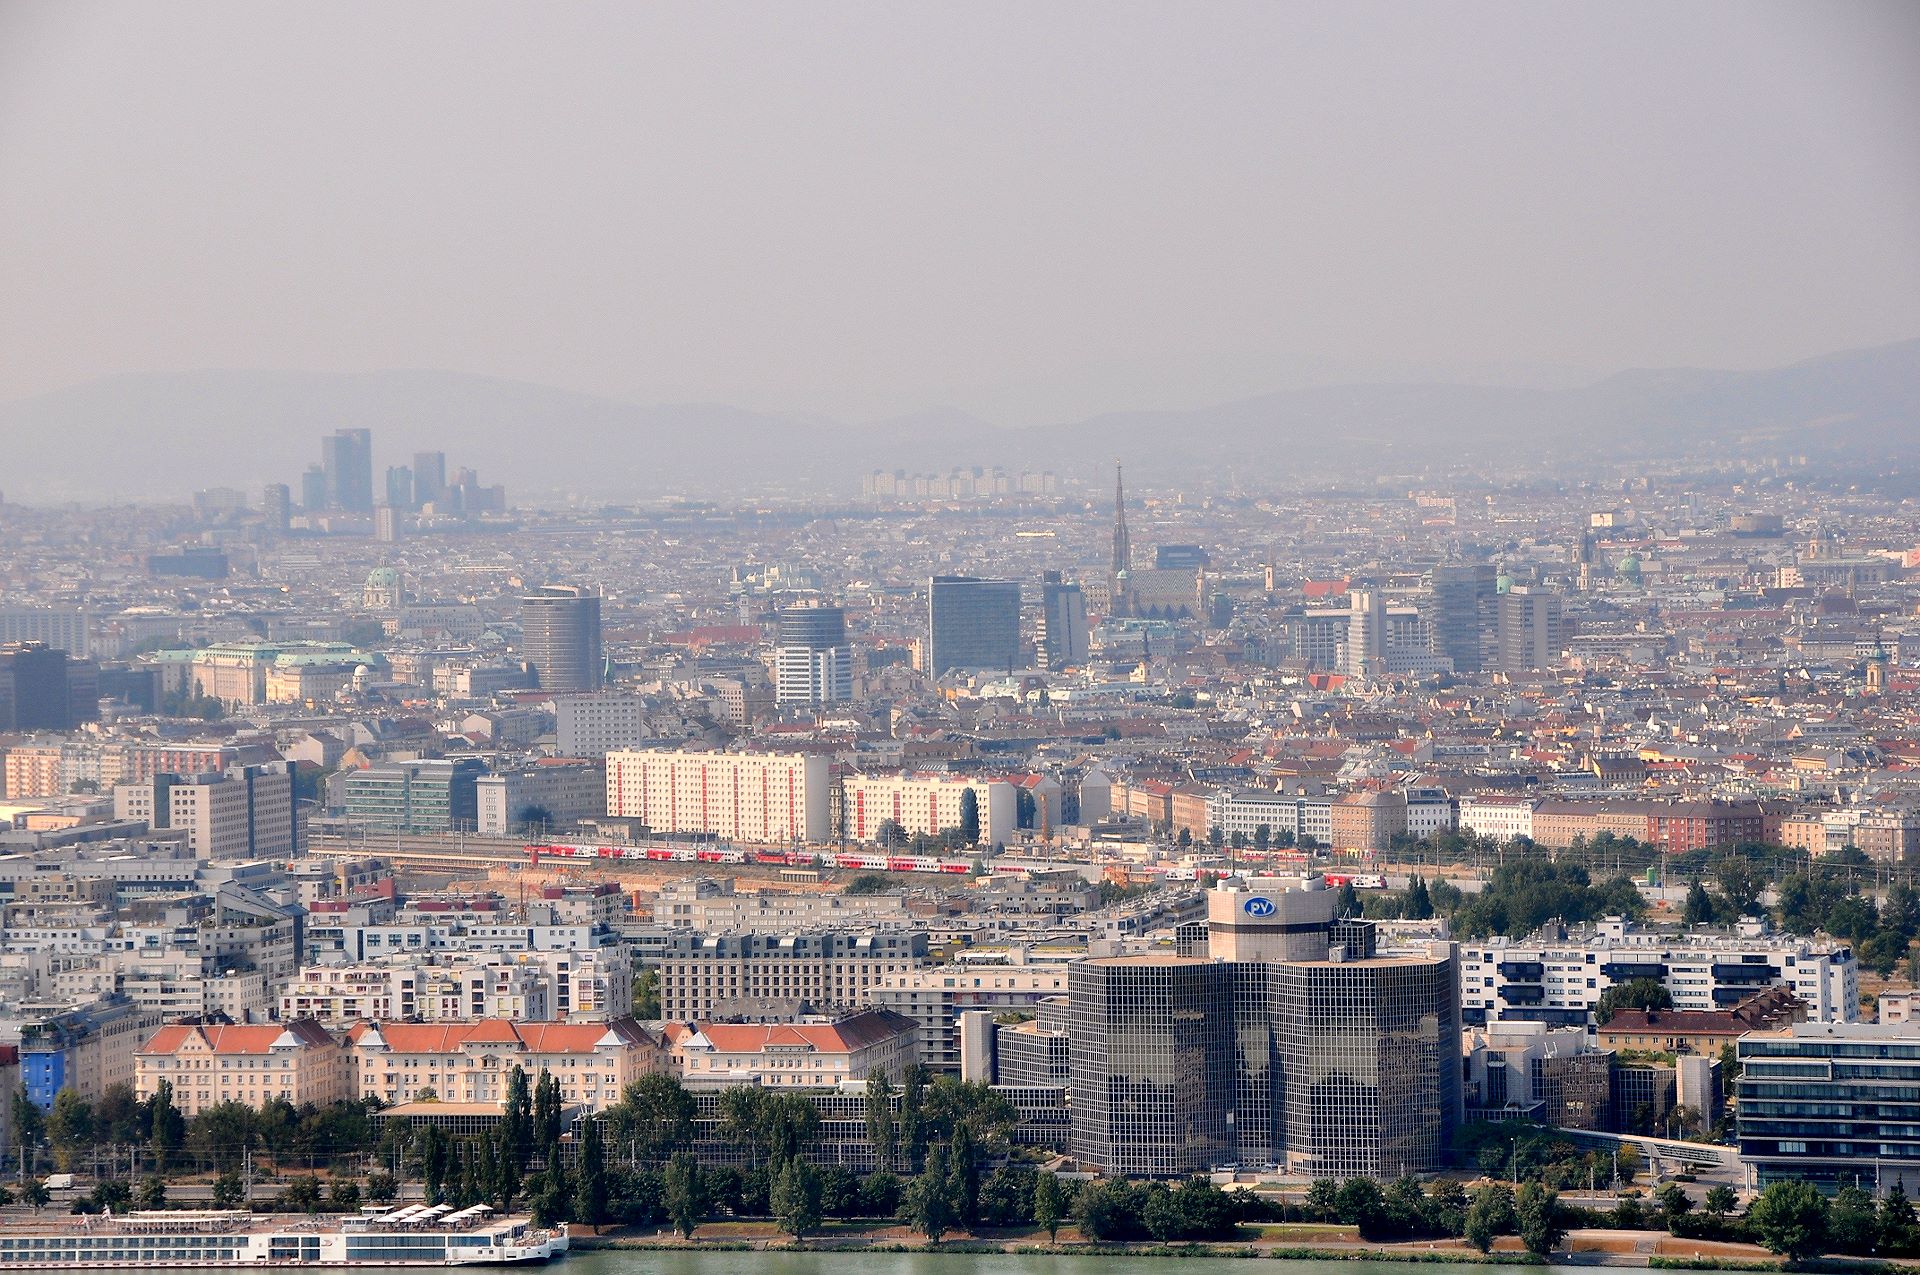 Das Stadtzentrum liegt ca. 4 km abseits der Donau (Stephansdom in der Bildmitte)